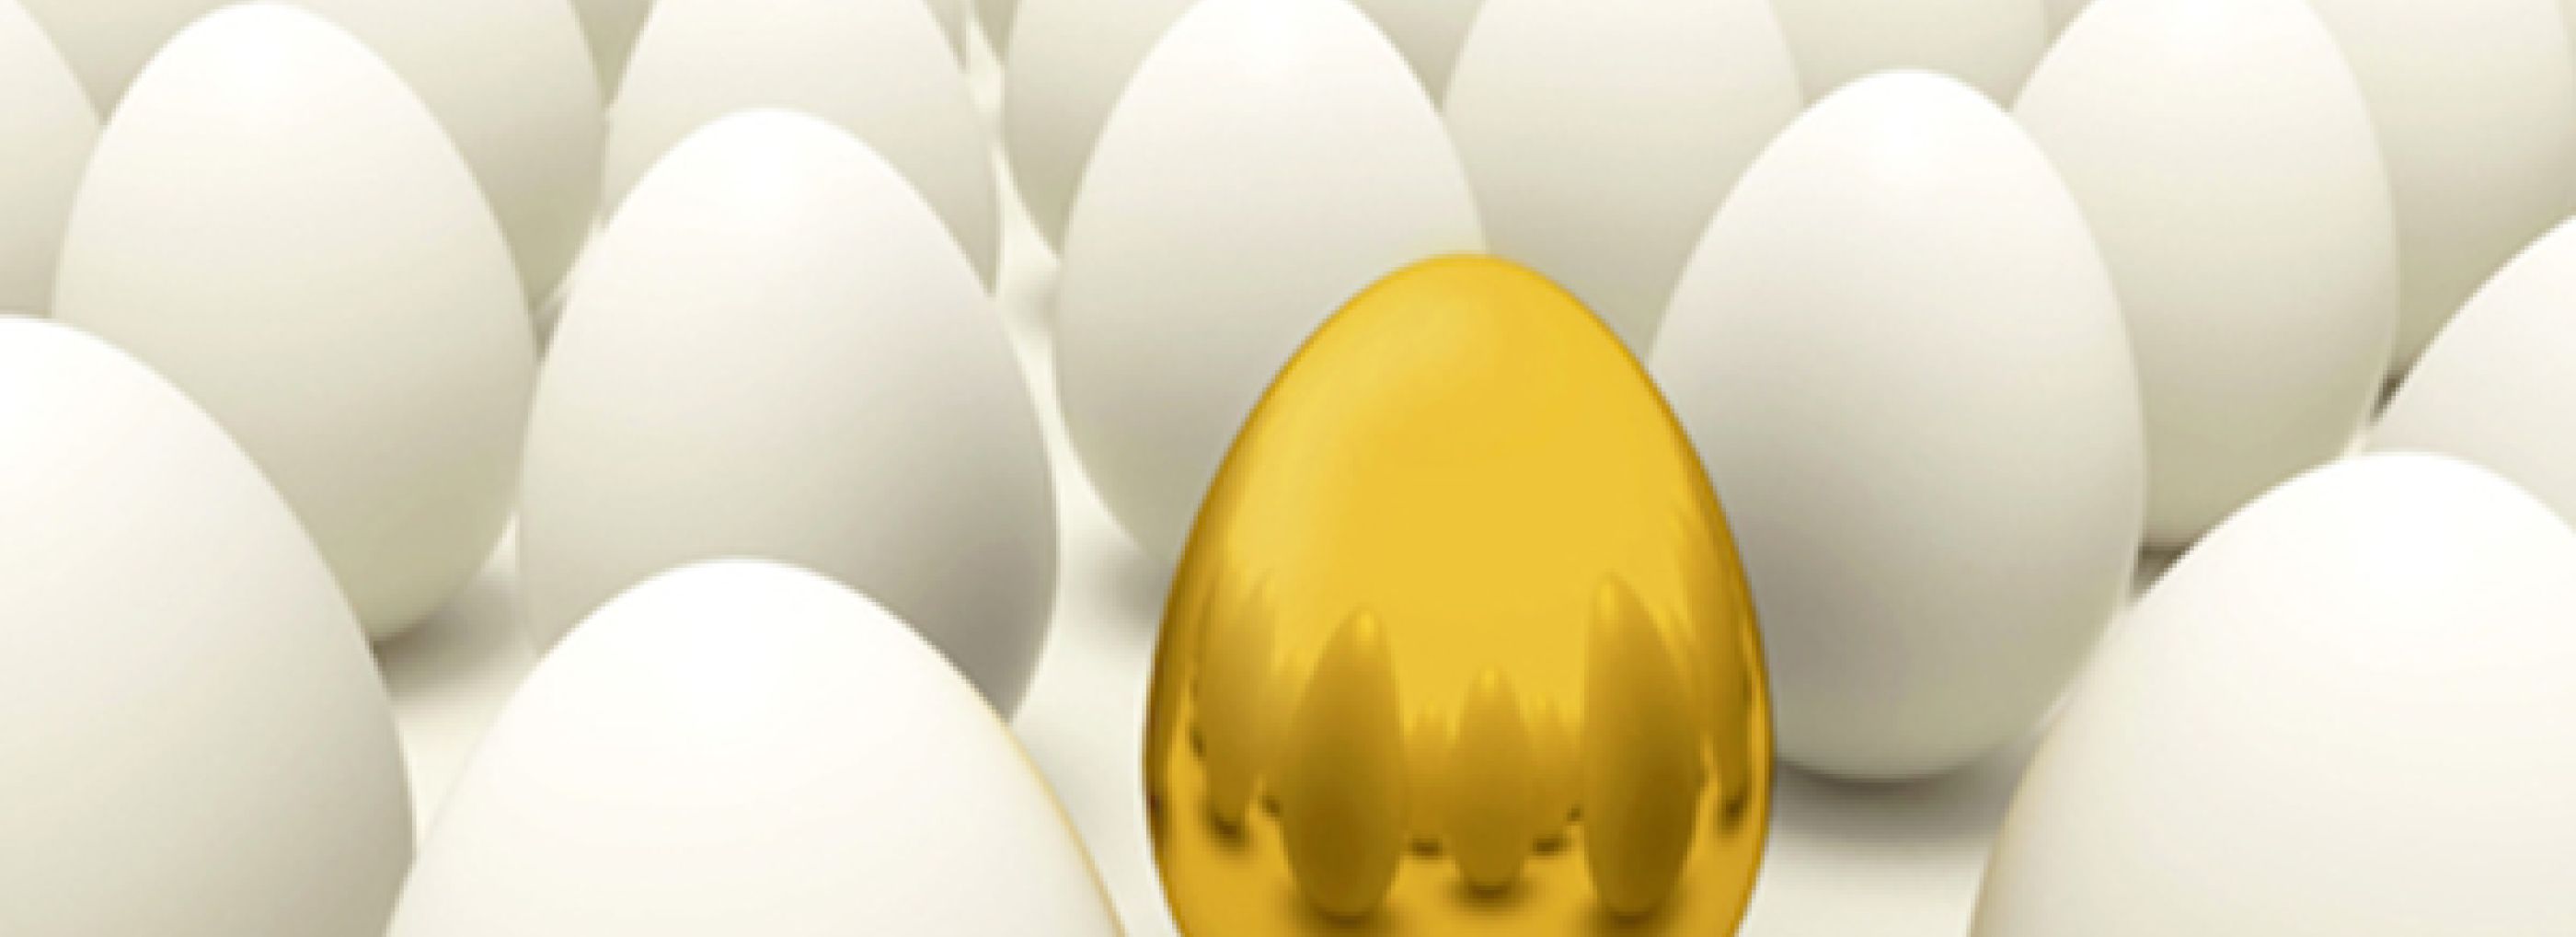 Golden egg sat amongst a number of normal eggs.